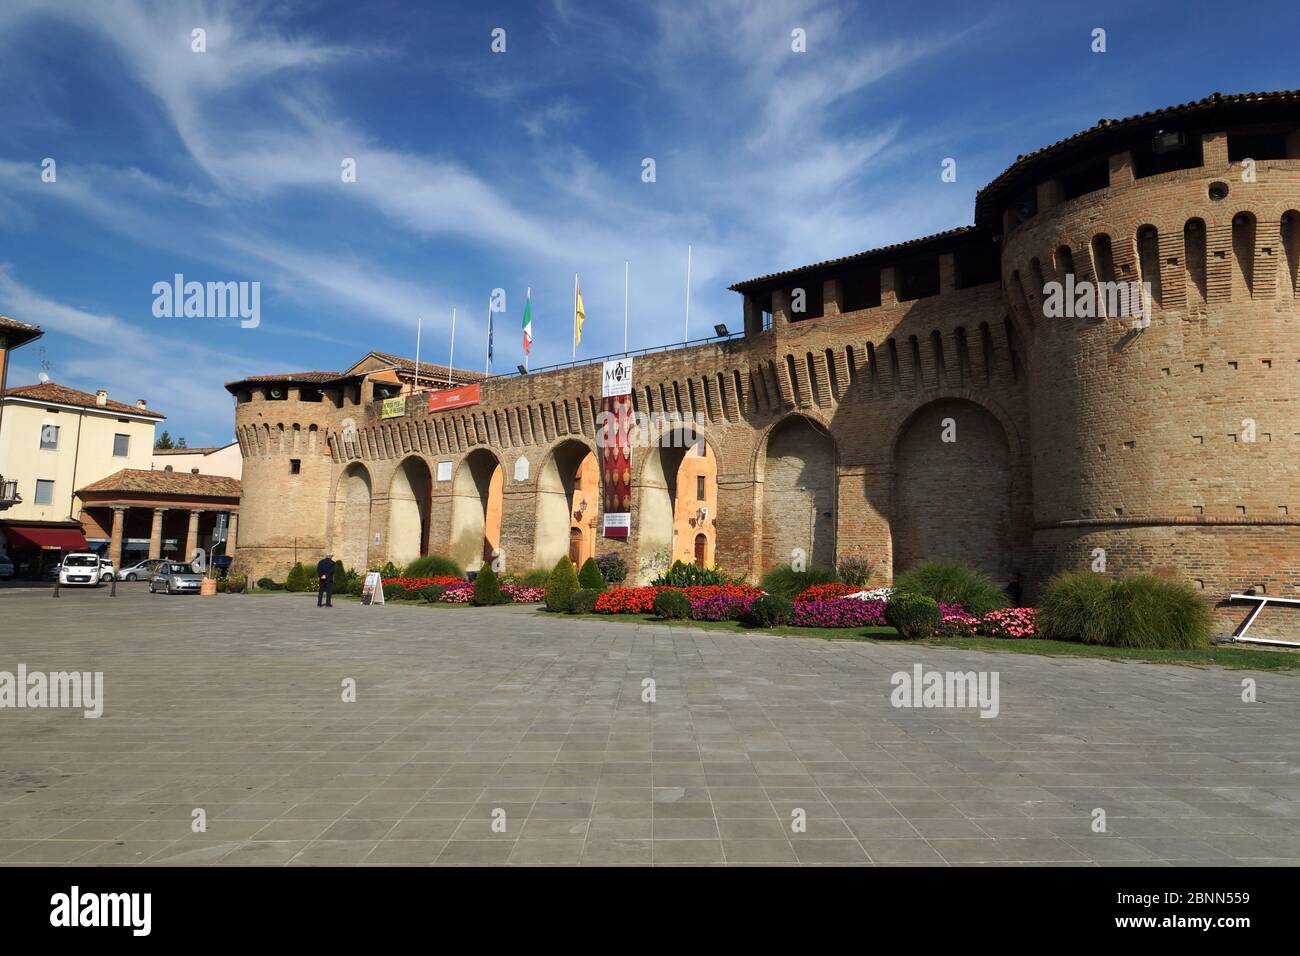 Castillo de Forlimpopoli. Forlimpopoli, Emilia-Romaña, provincia de Forlì-Cesena, Italia. Foto de stock